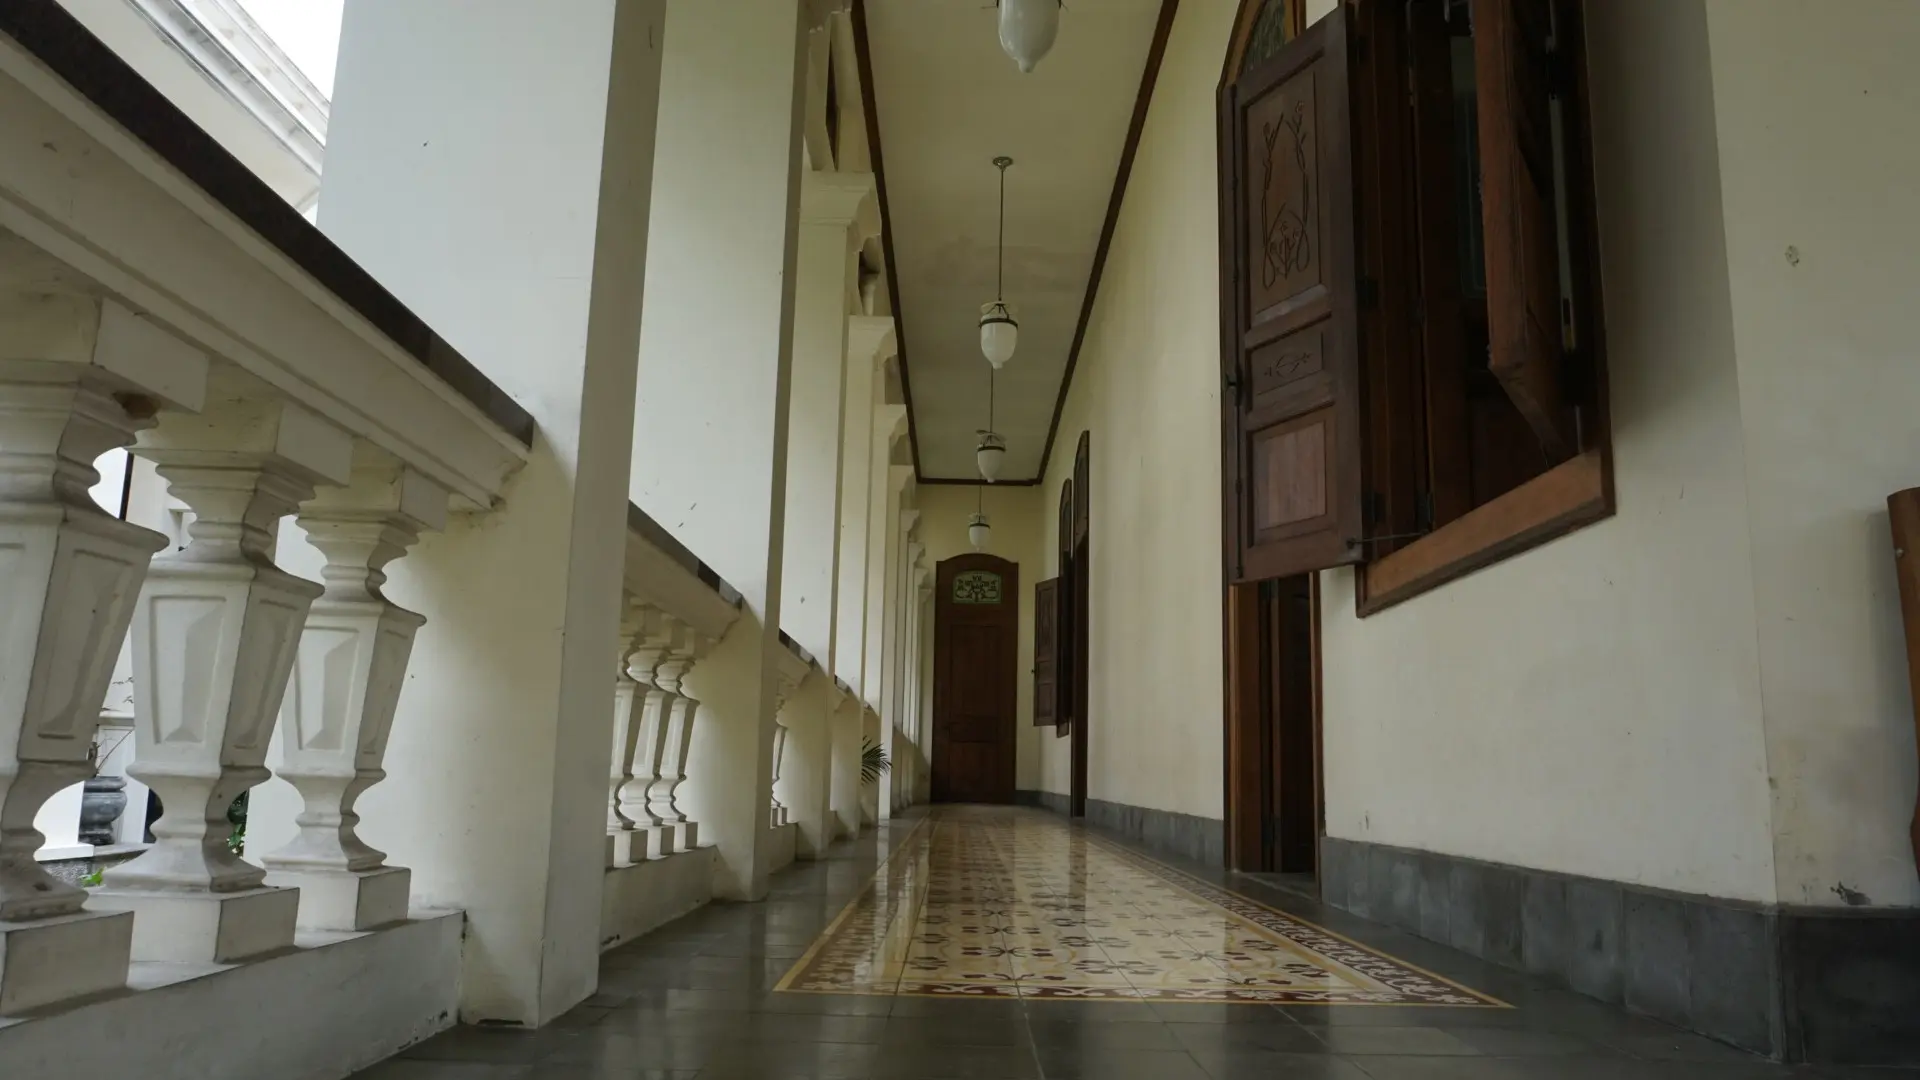 KPK menghibahkan bangunan rumah hasil rampasan milik eks Kakorlantas Djoko Susilo kepada Pemkot Solo yang akan dimanfaatkan menjadi Museum Batik.(/Fajar Abrori)